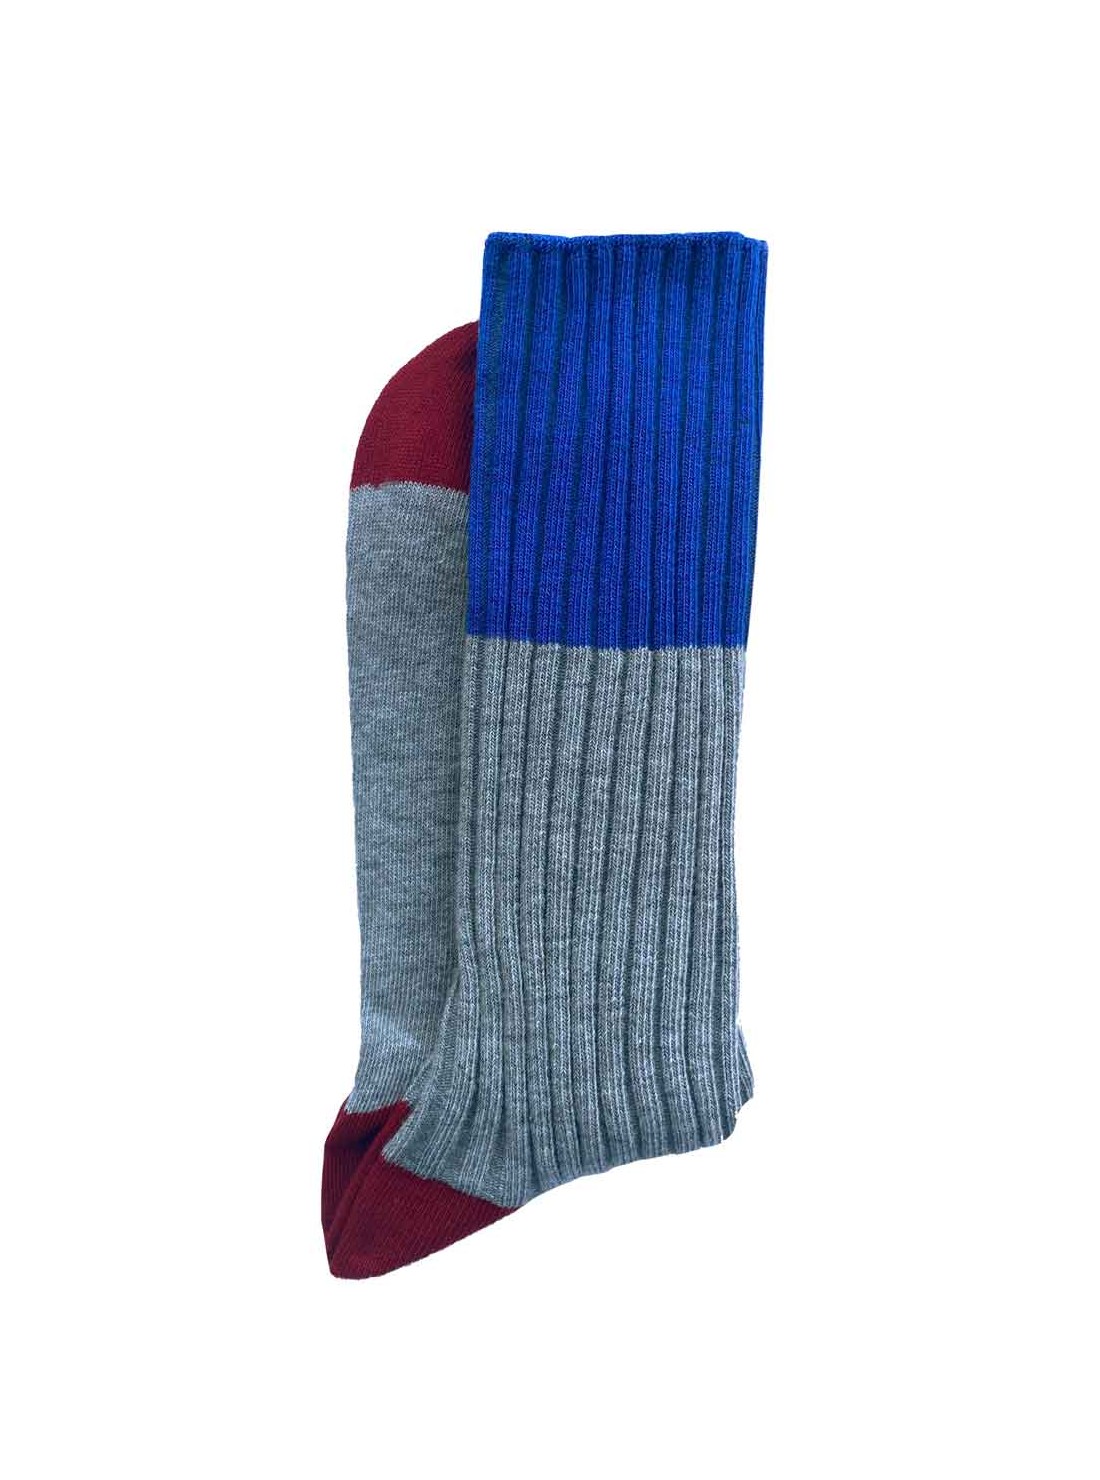 chaussettes coton tricolore gris bleu rouge unisexe